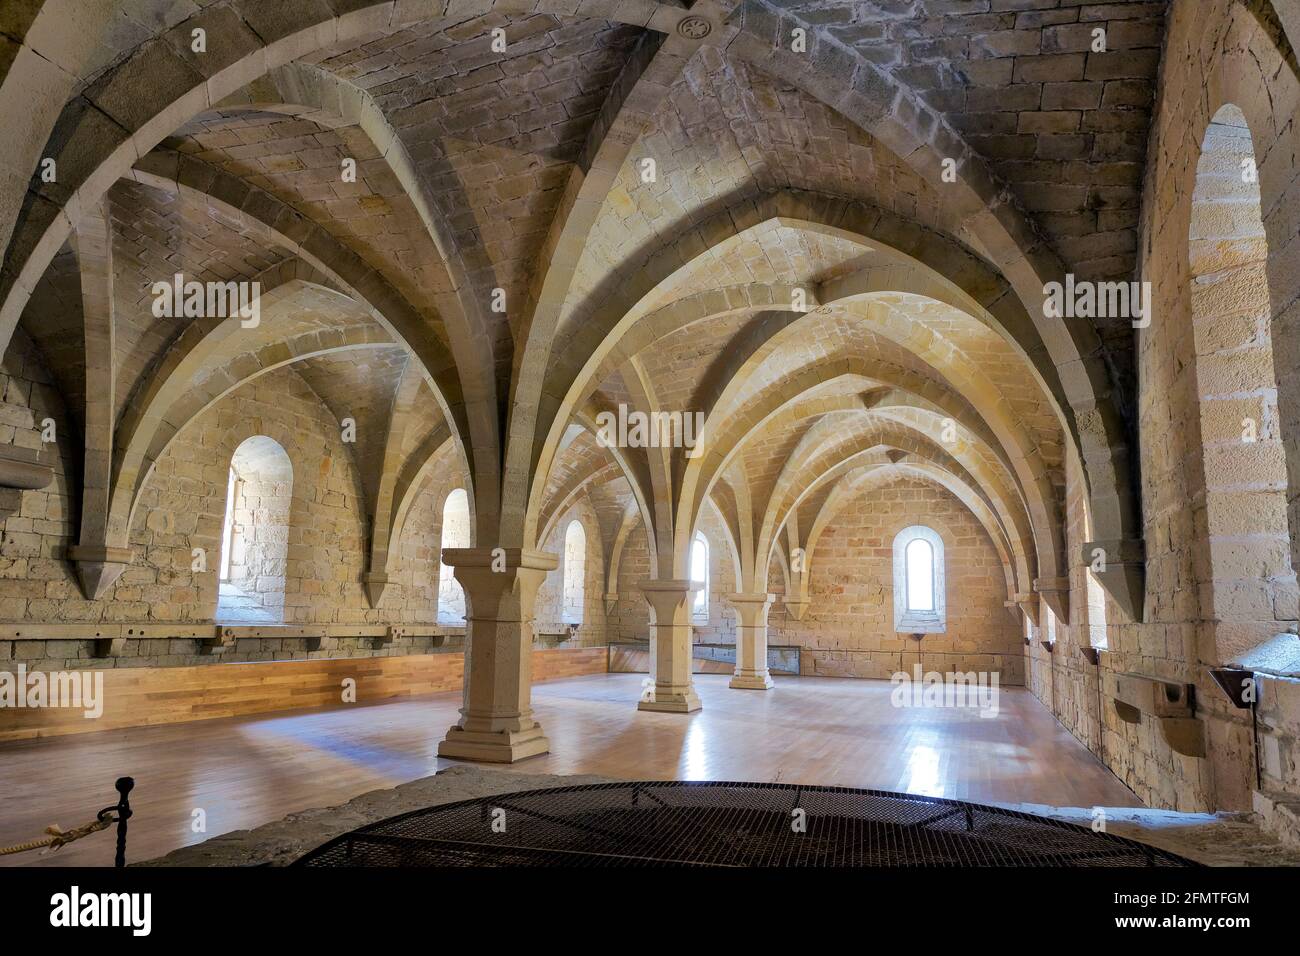 Monastery of Santa Maria de Poblet, Catalonia, Spain basement vault Stock Photo